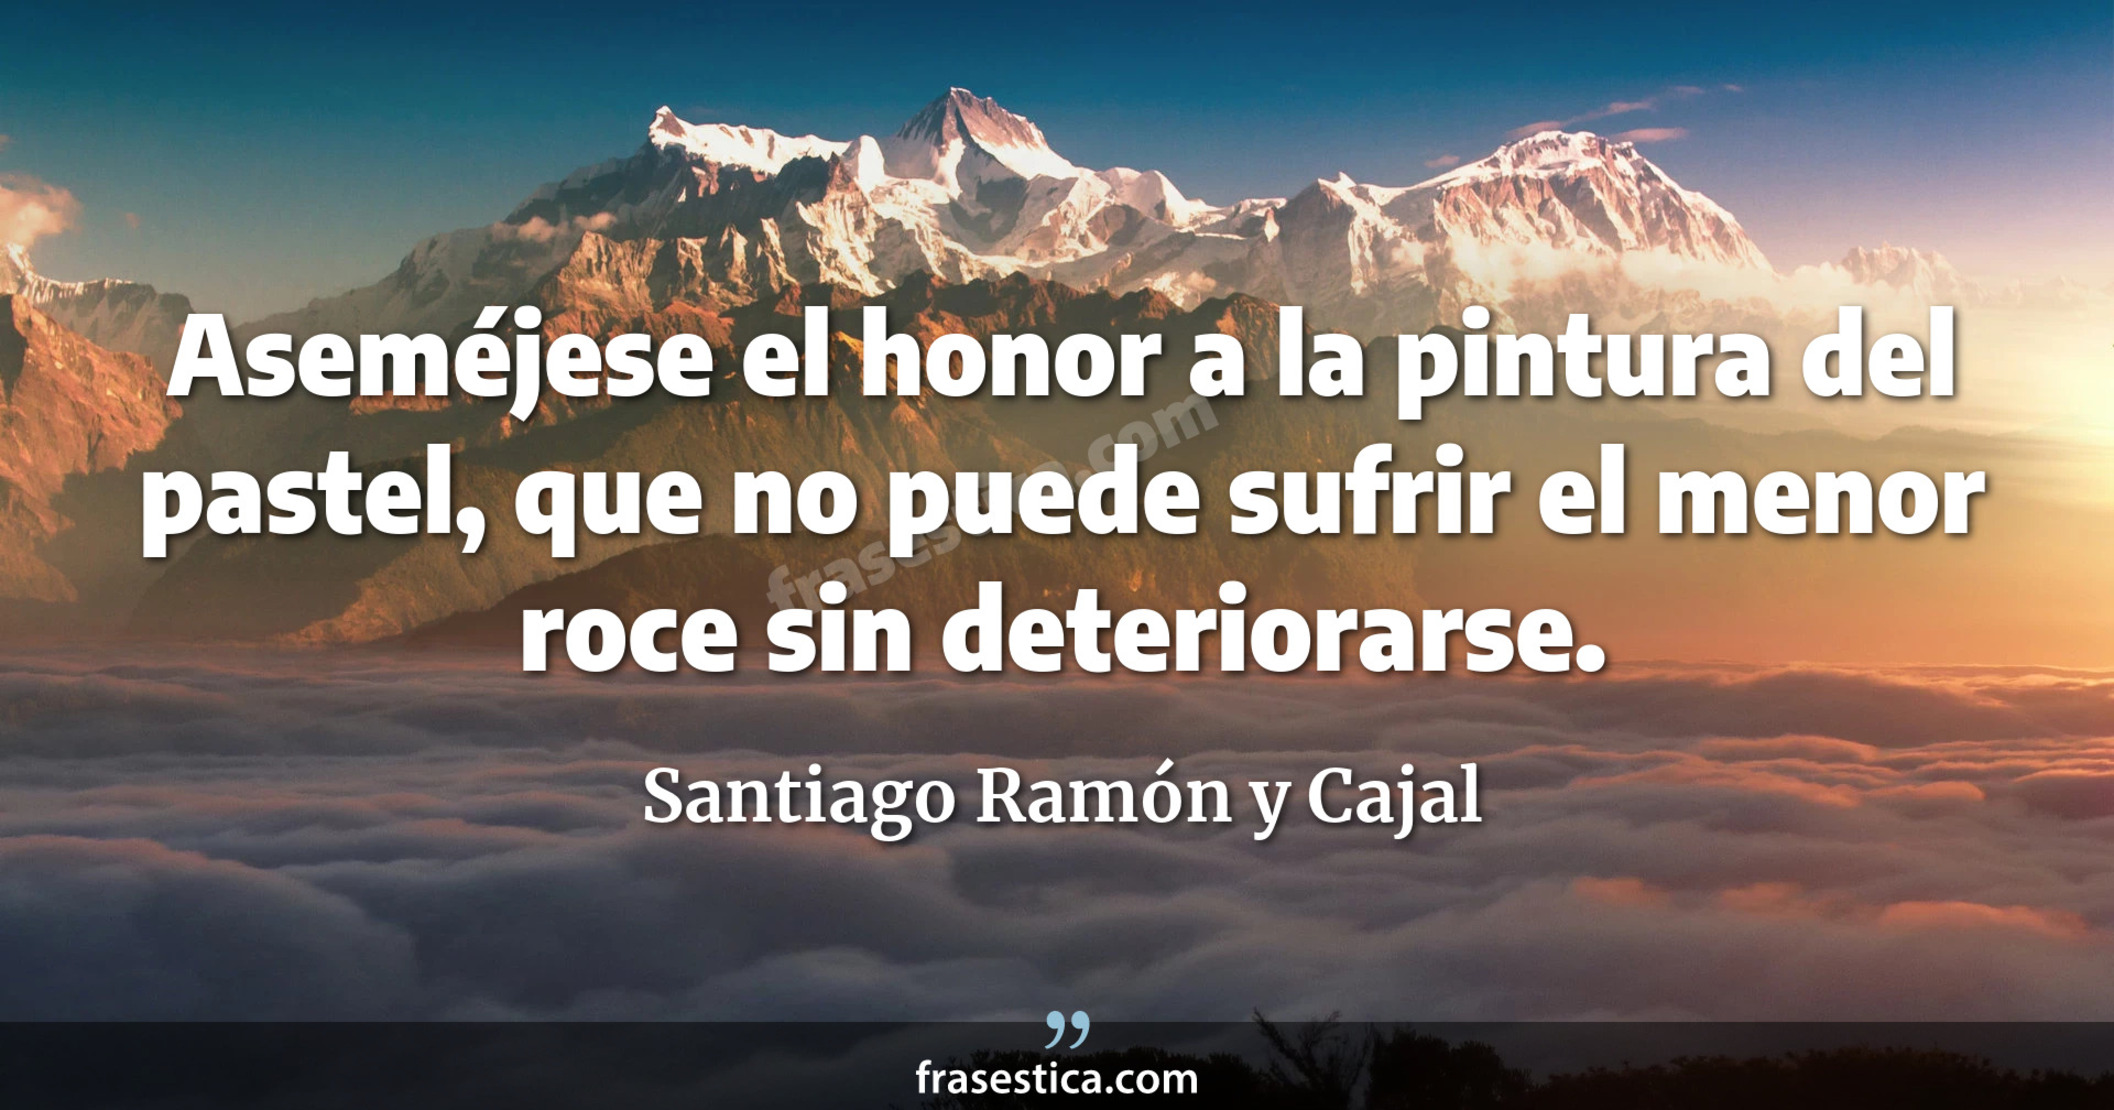 Aseméjese el honor a la pintura del pastel, que no puede sufrir el menor roce sin deteriorarse. - Santiago Ramón y Cajal